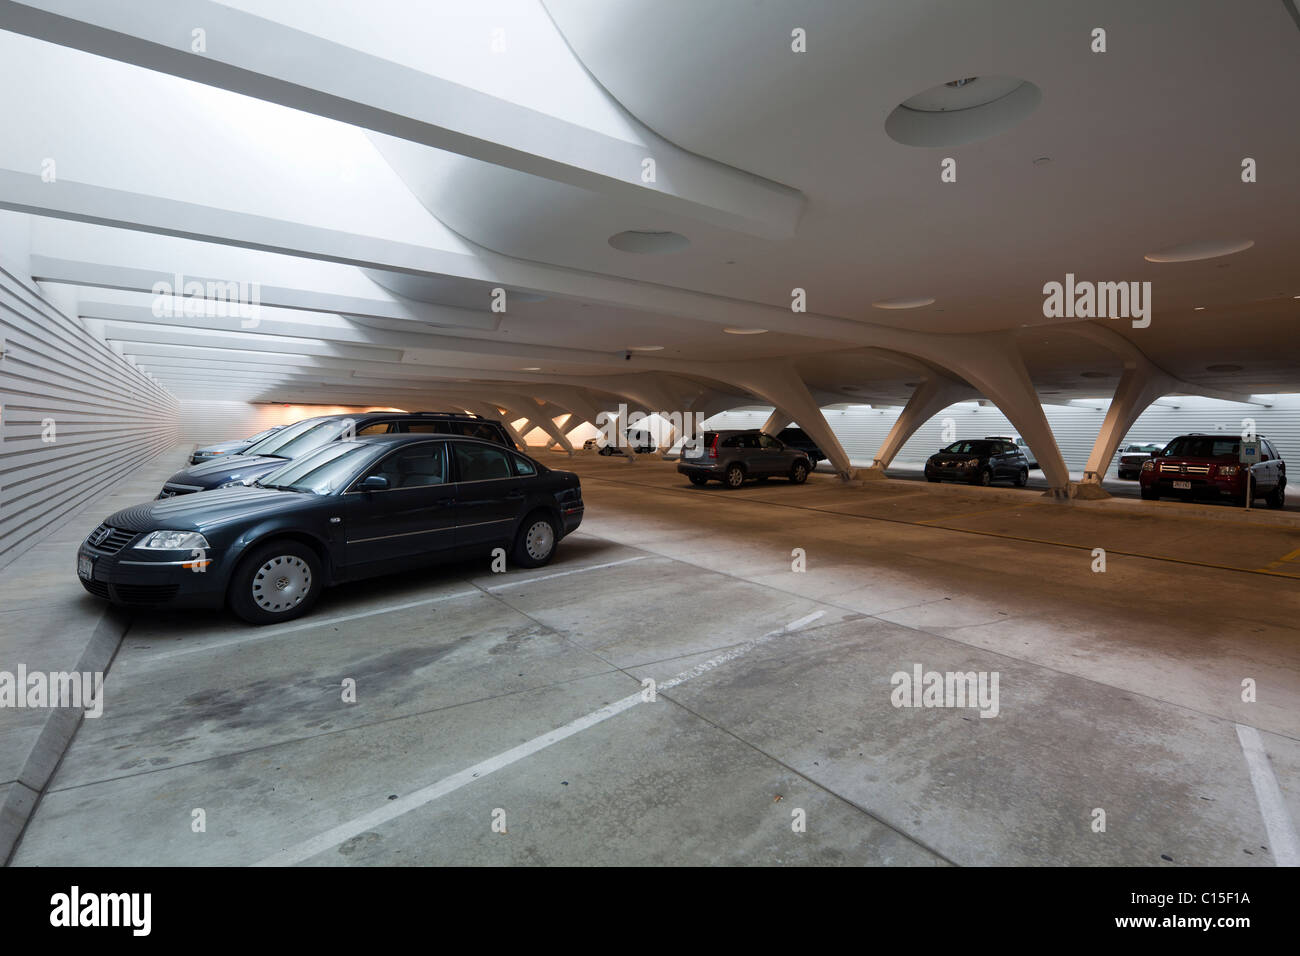 Parcheggio in garage, Quadracci Pavilion, progettato da Santiago Calatrava, Milwaukee Art Museum, Wisconsin, STATI UNITI D'AMERICA Foto Stock